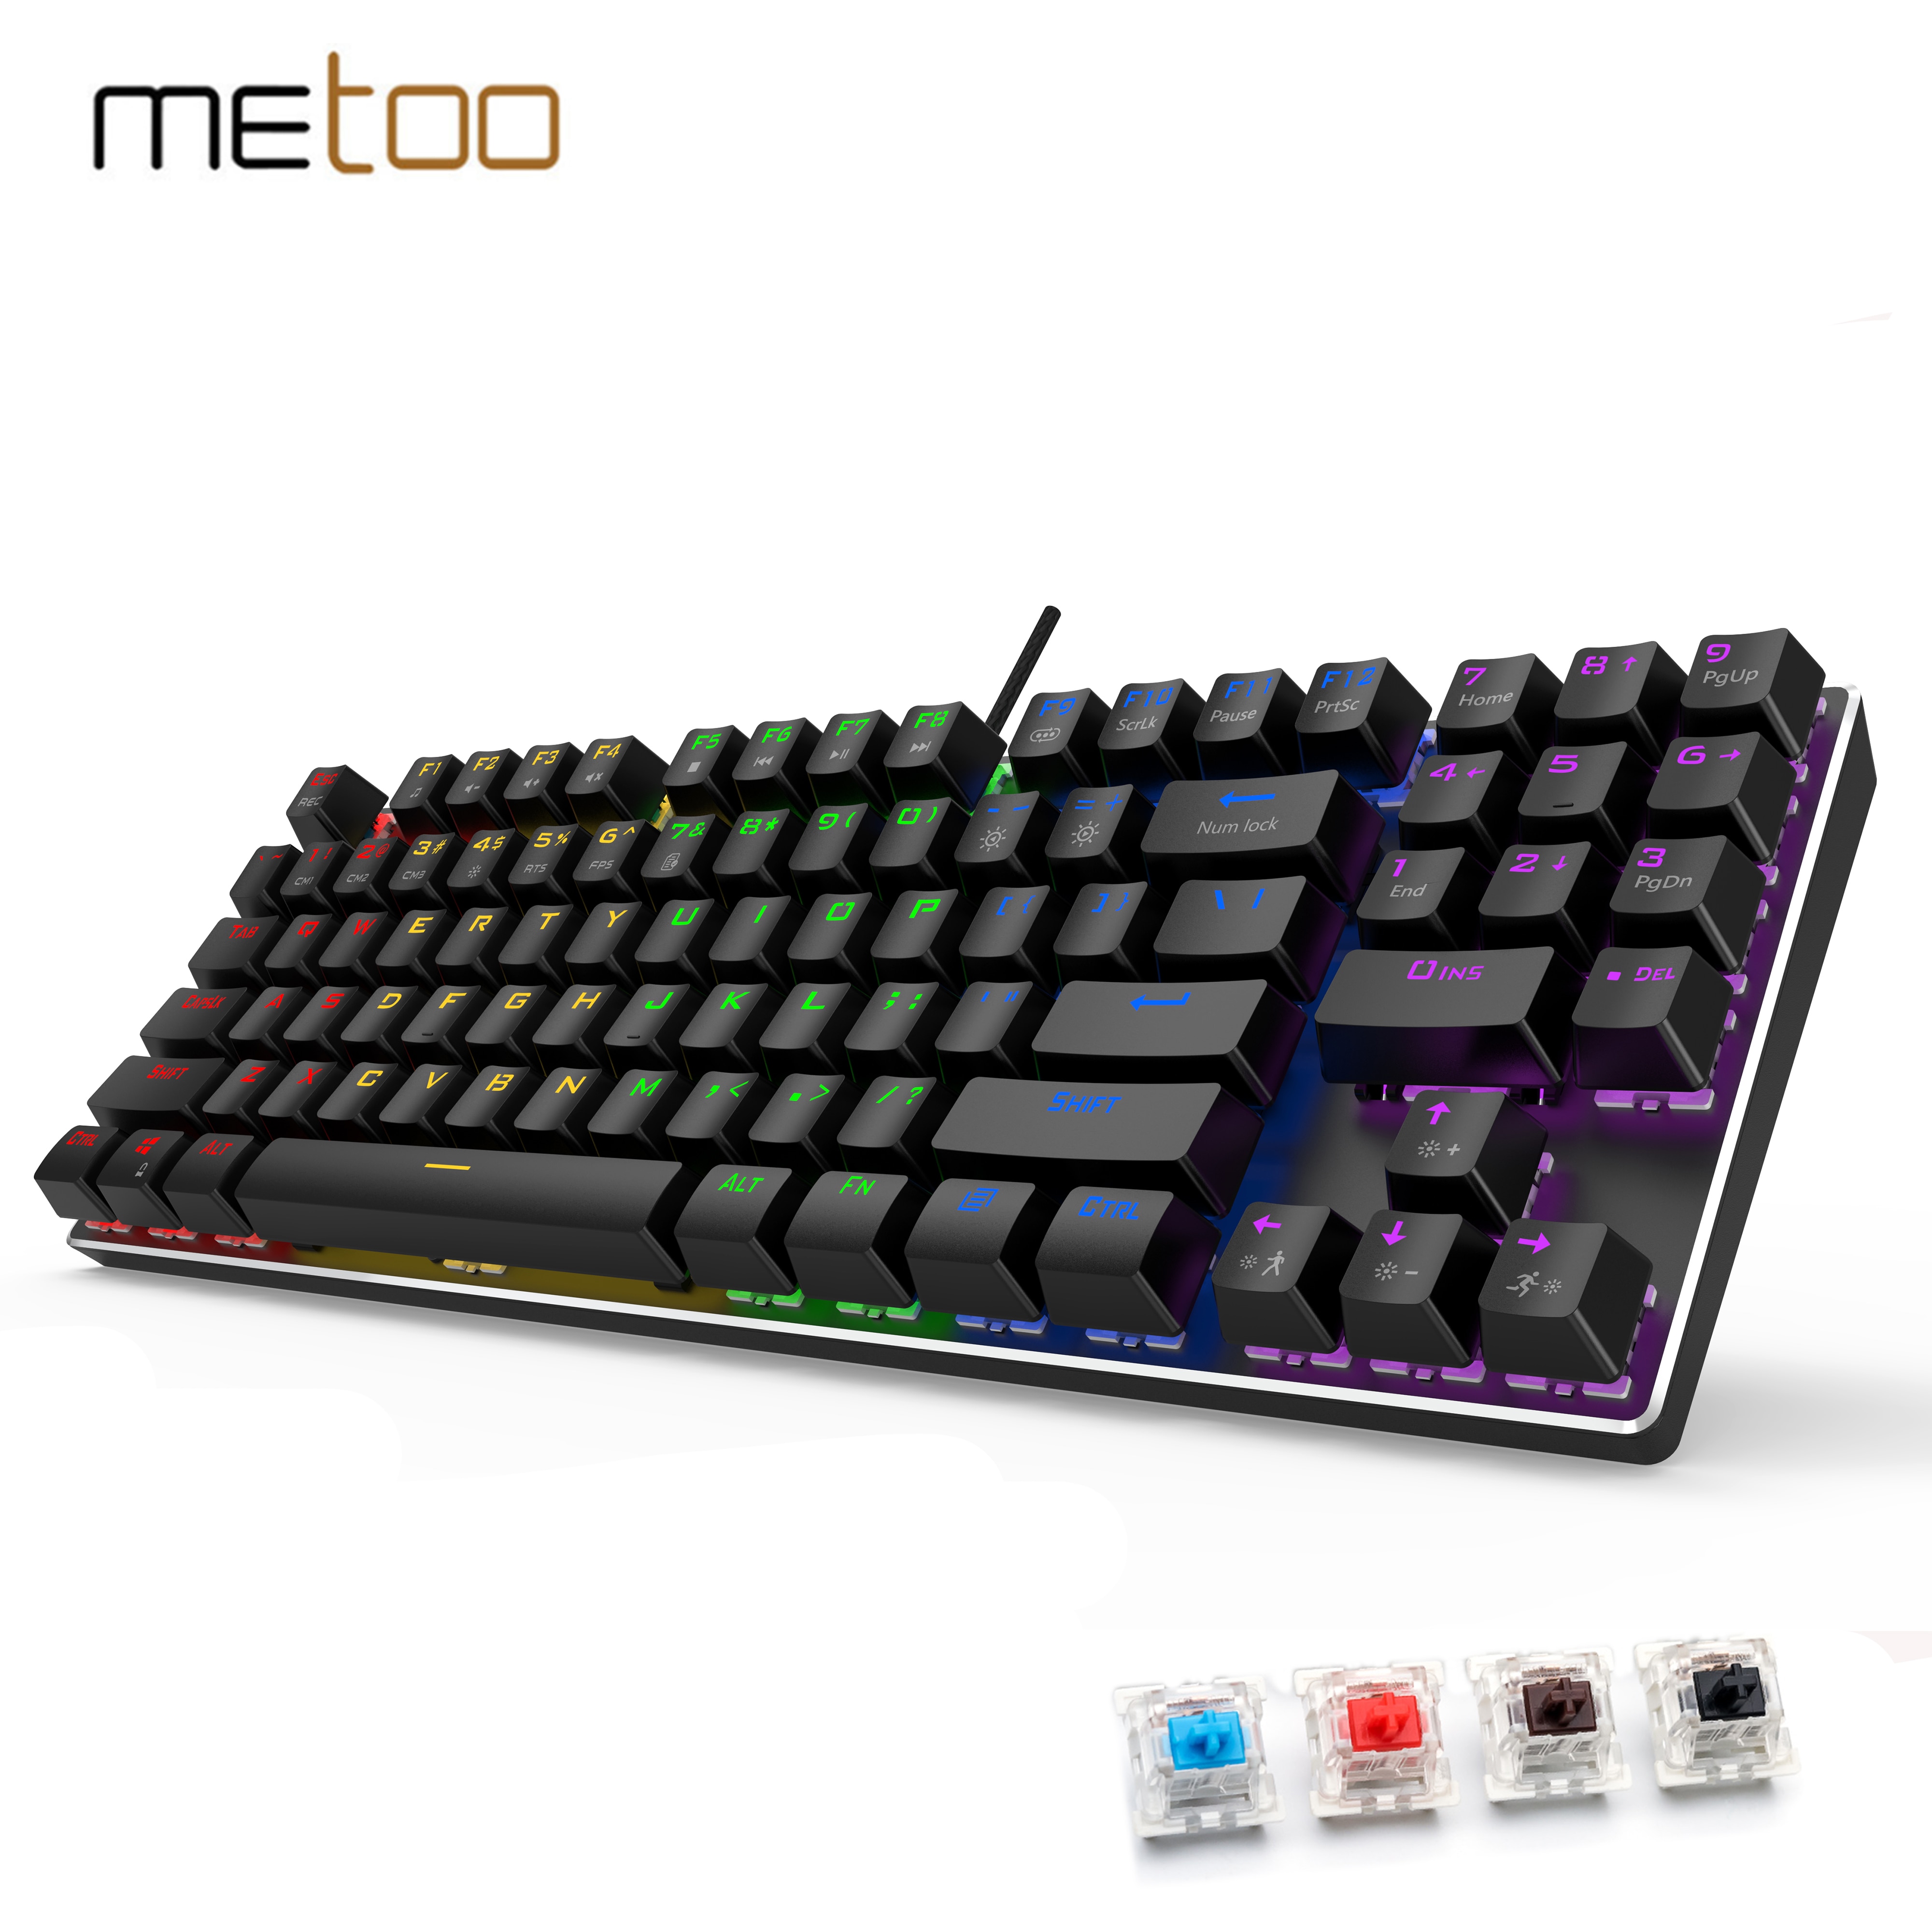 Metoo-teclado mecânico com botões de número para jogos, desenho usb, com fio,...